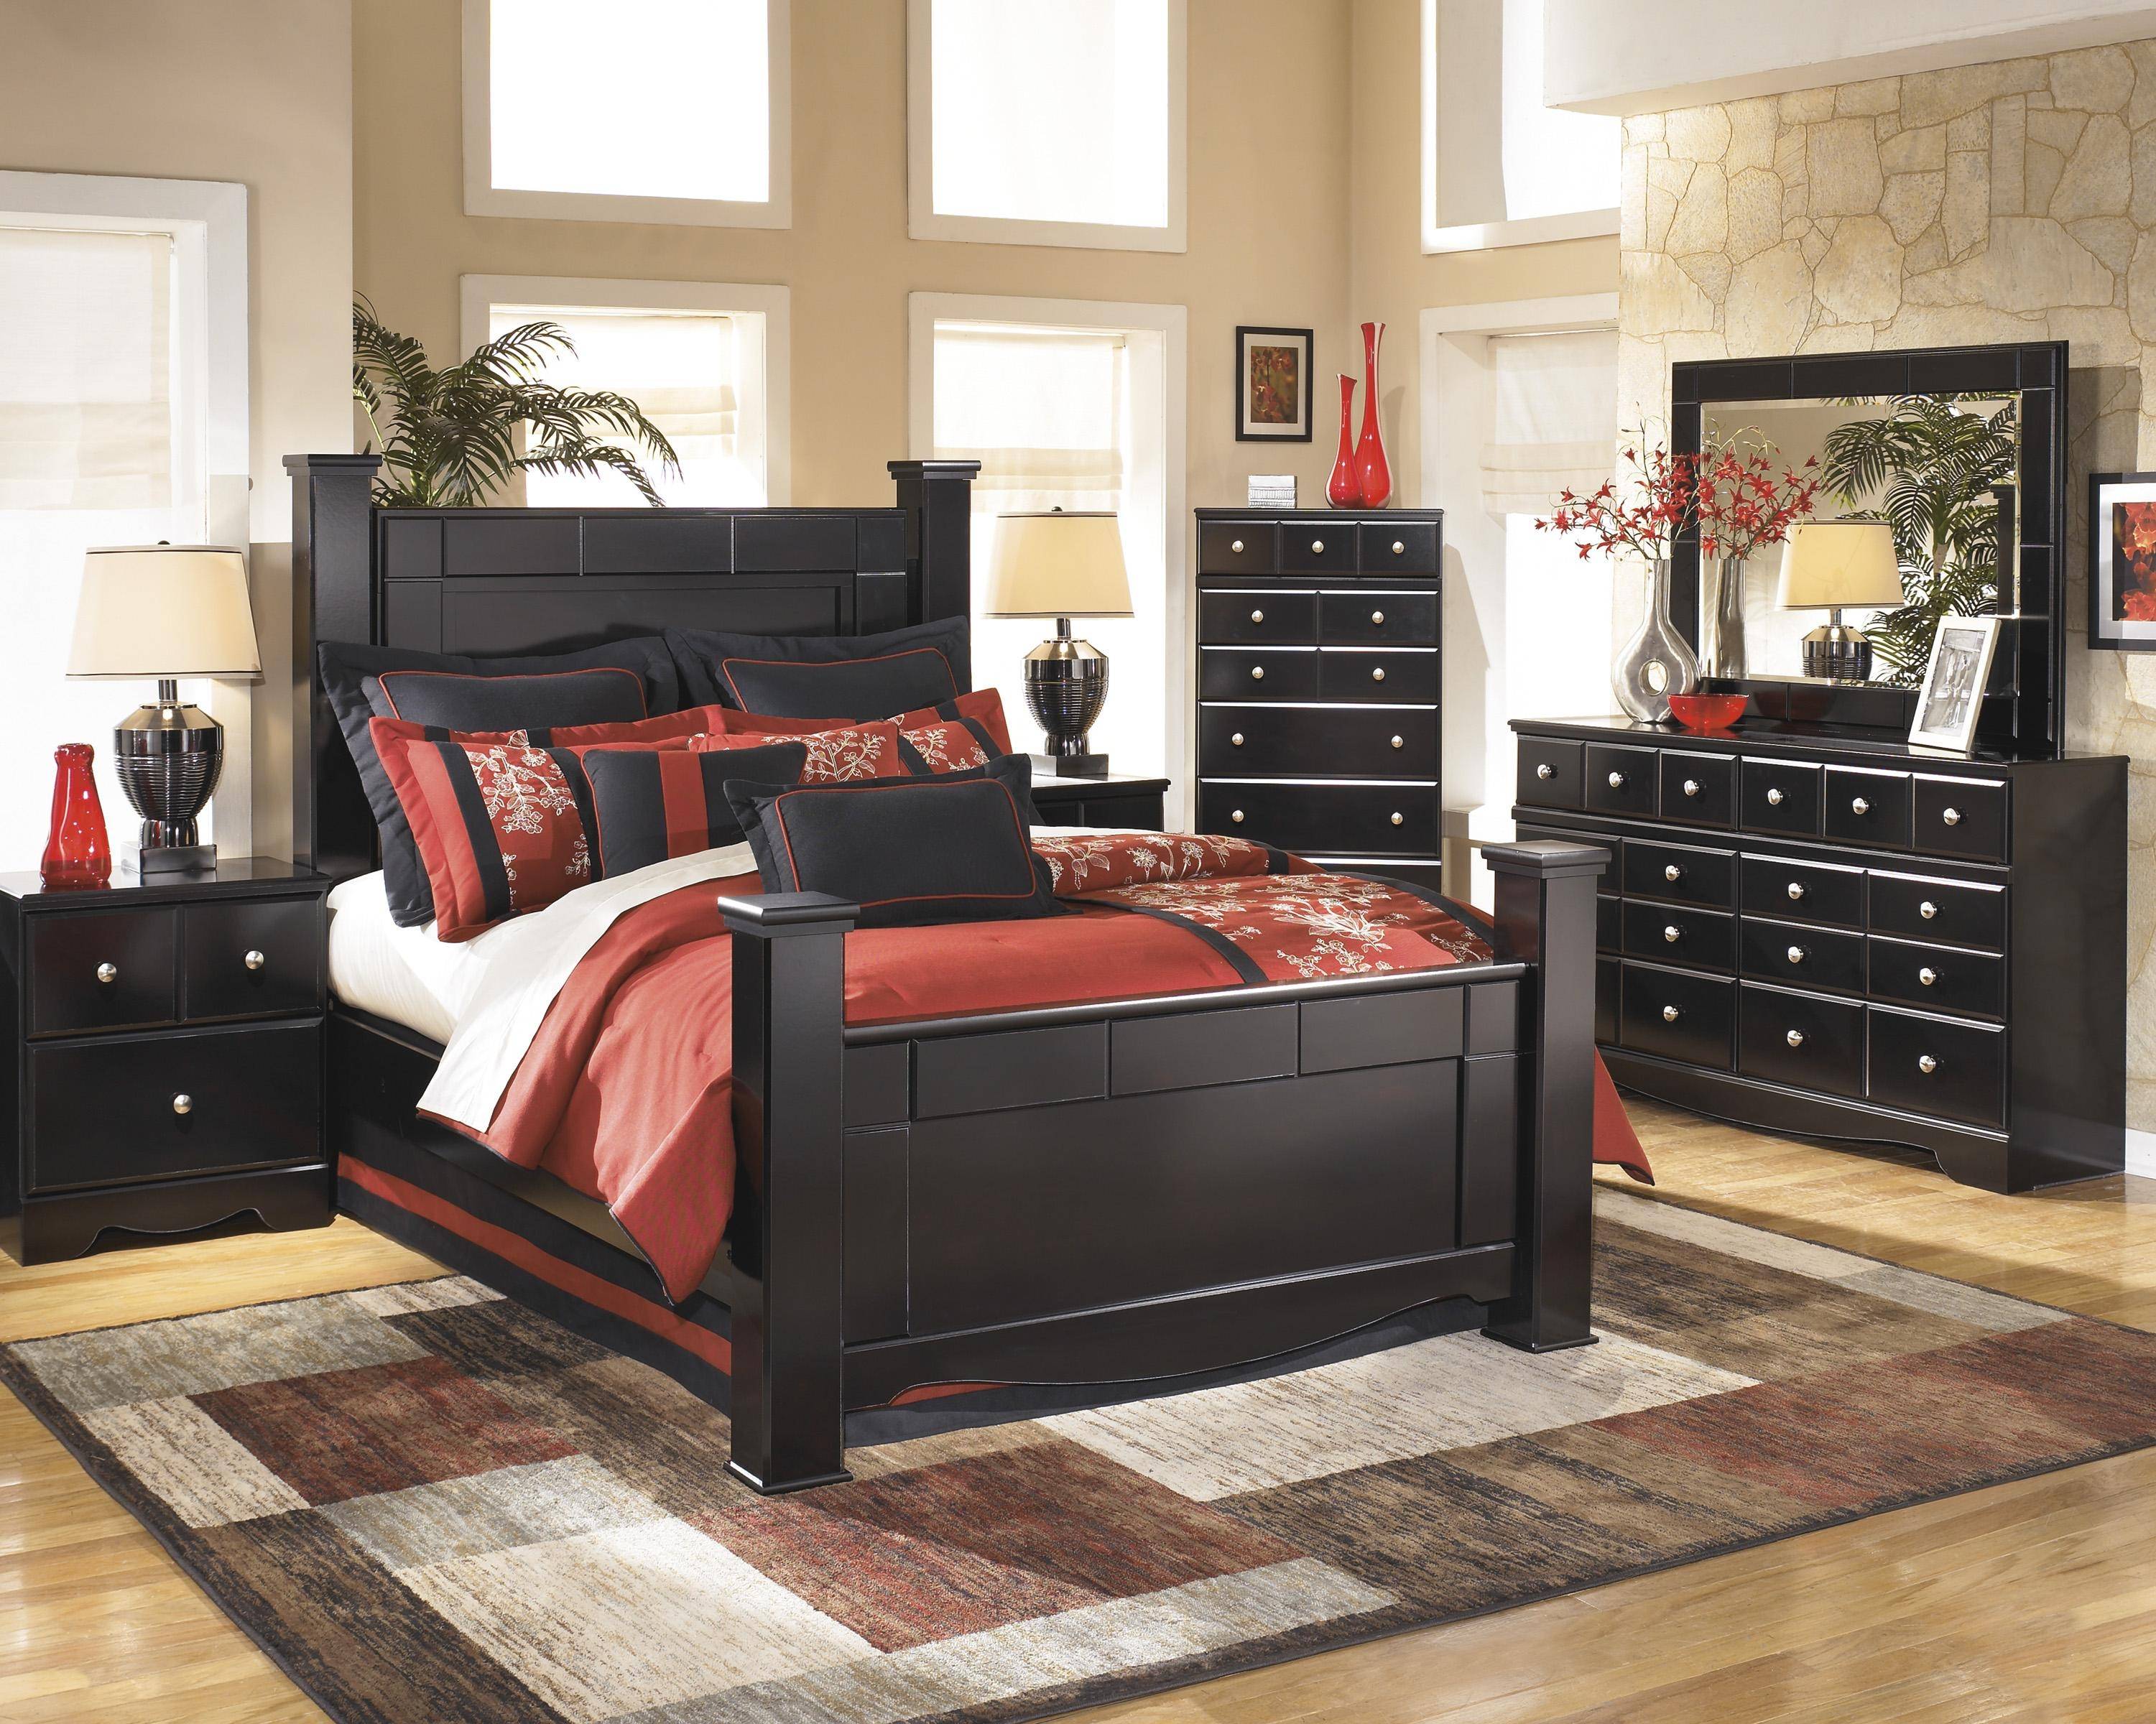 ashley home bedroom furniture set